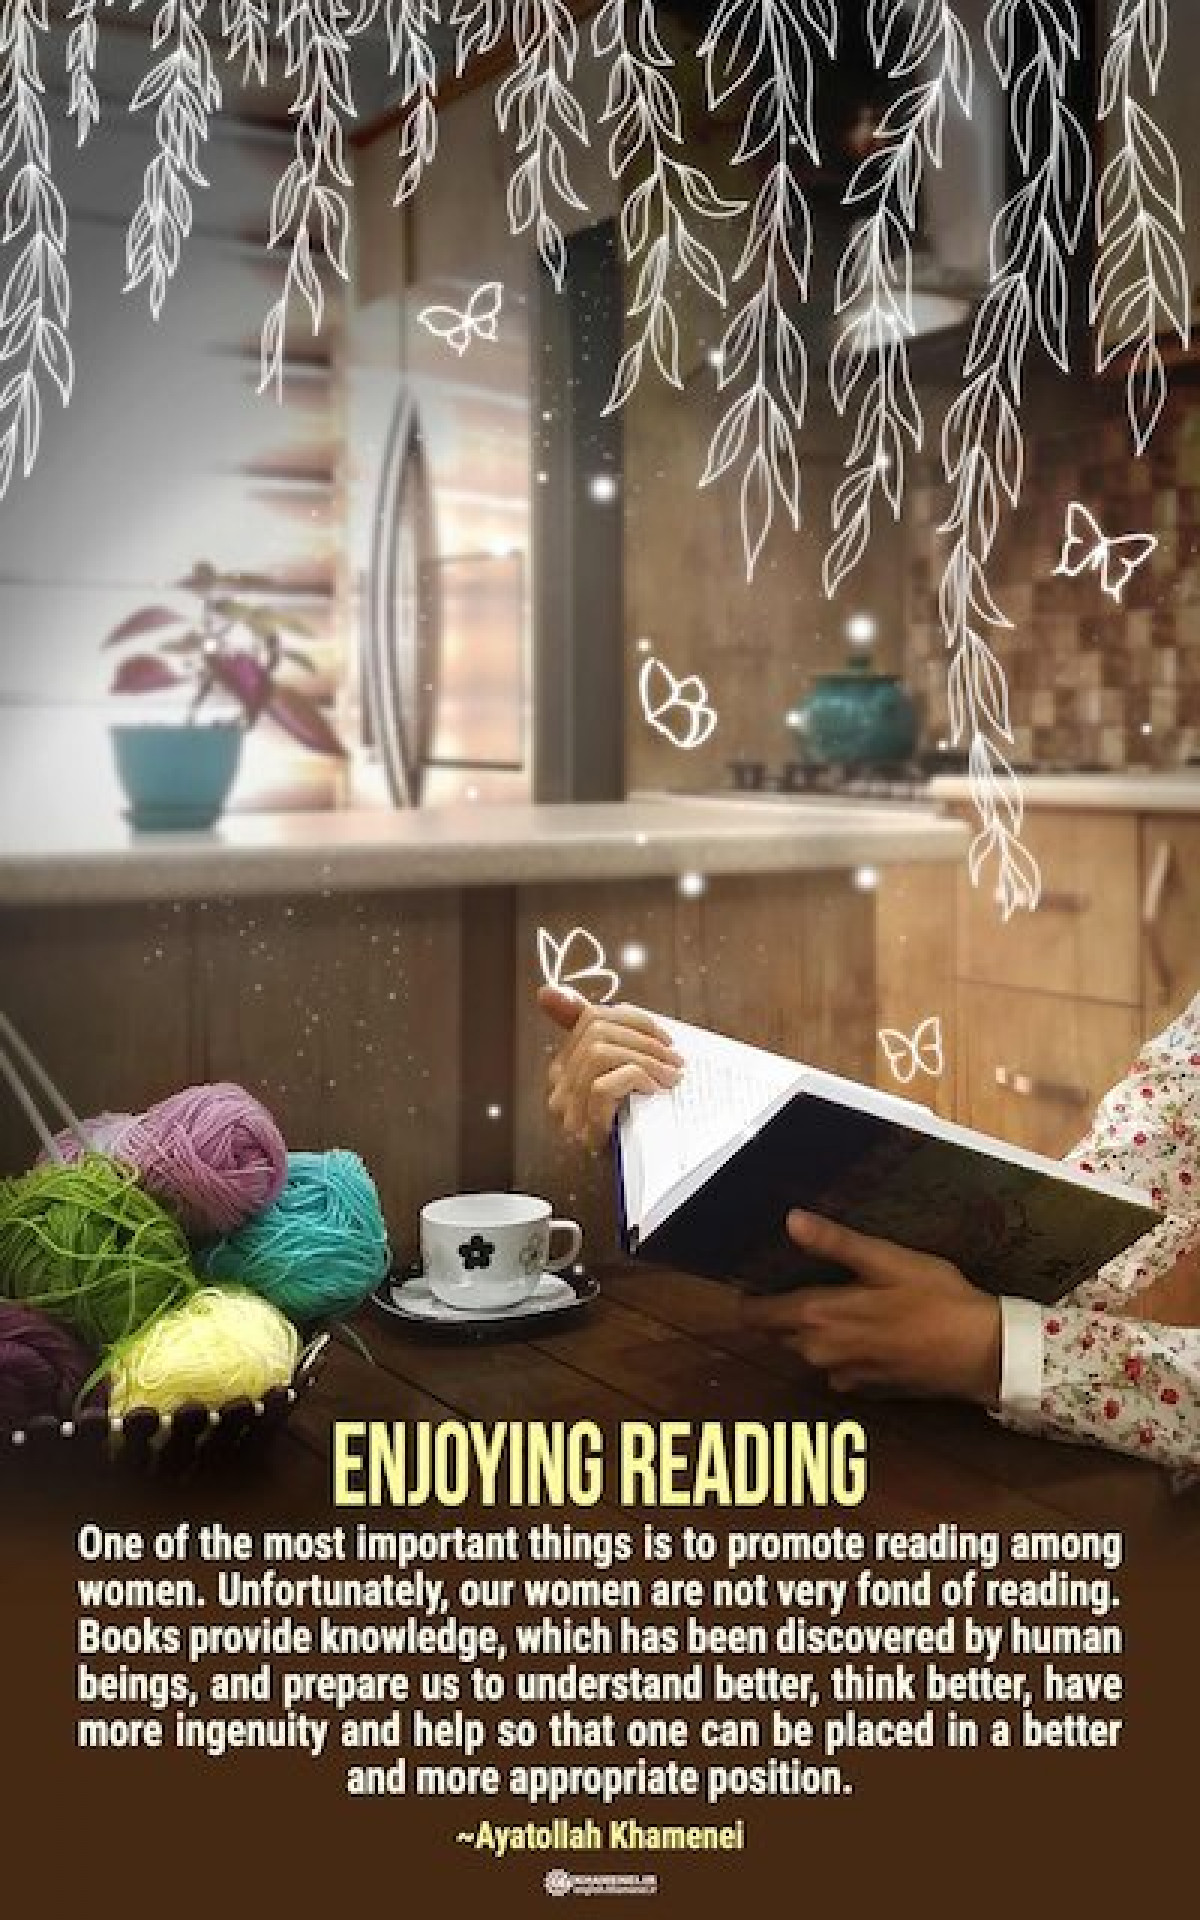 Enjoying reading